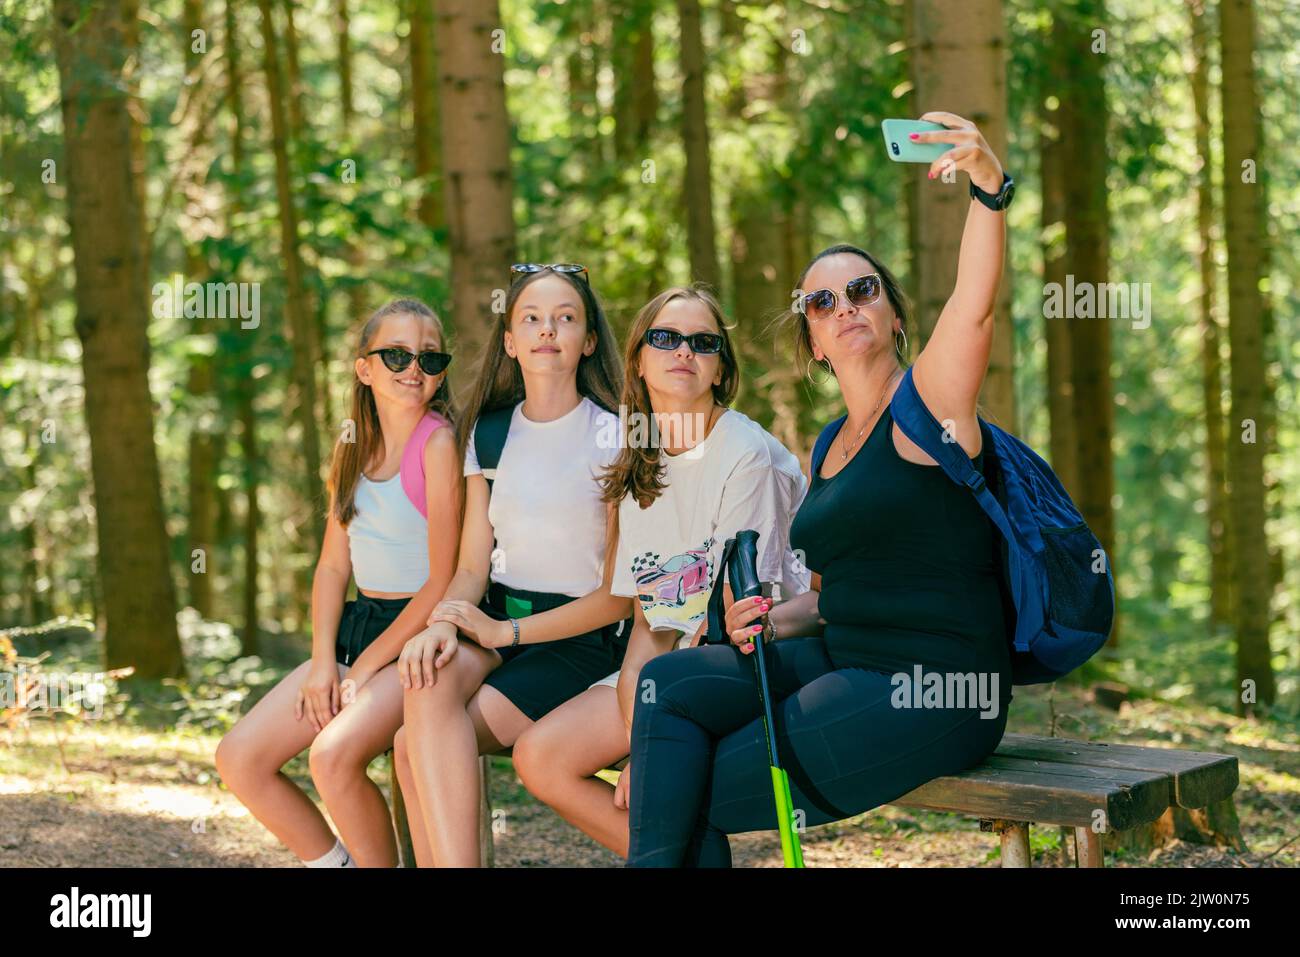 Les alpinistes prennent le selfie avec le téléphone sur un banc en bois. Forêt en arrière-plan Banque D'Images